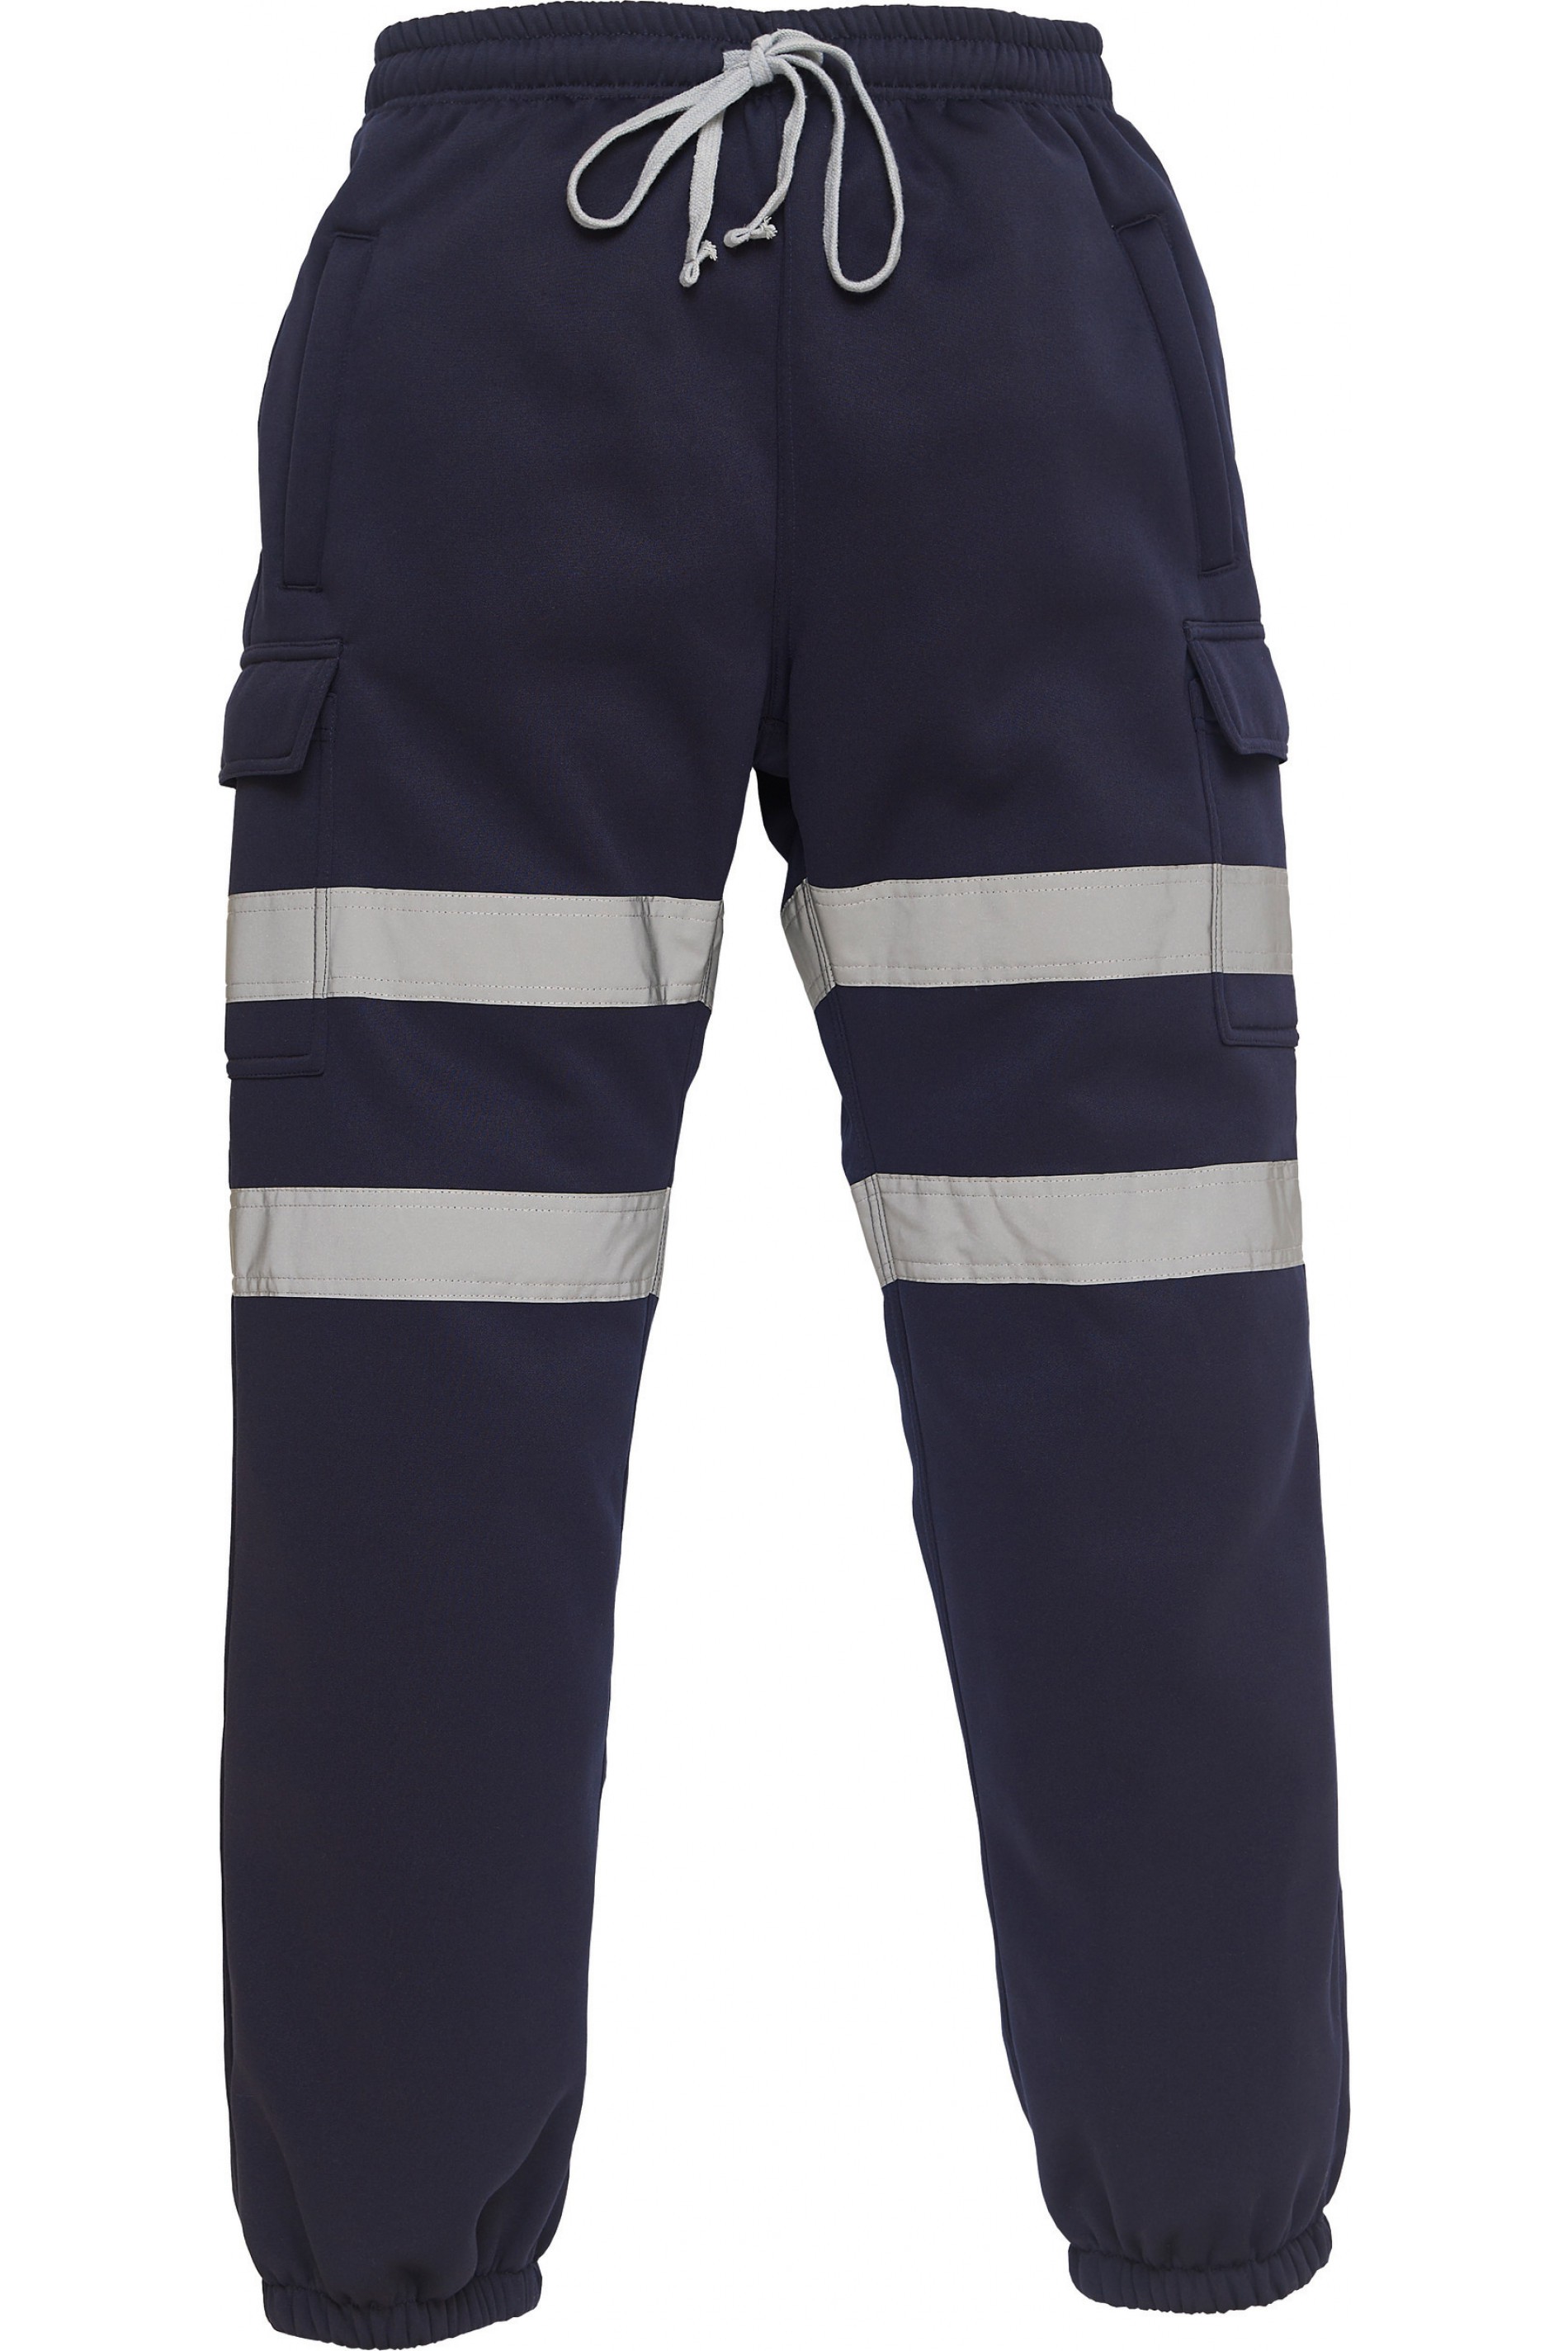 Pantalon jogging haute visibilite classe 1 Yoko cotepro marine